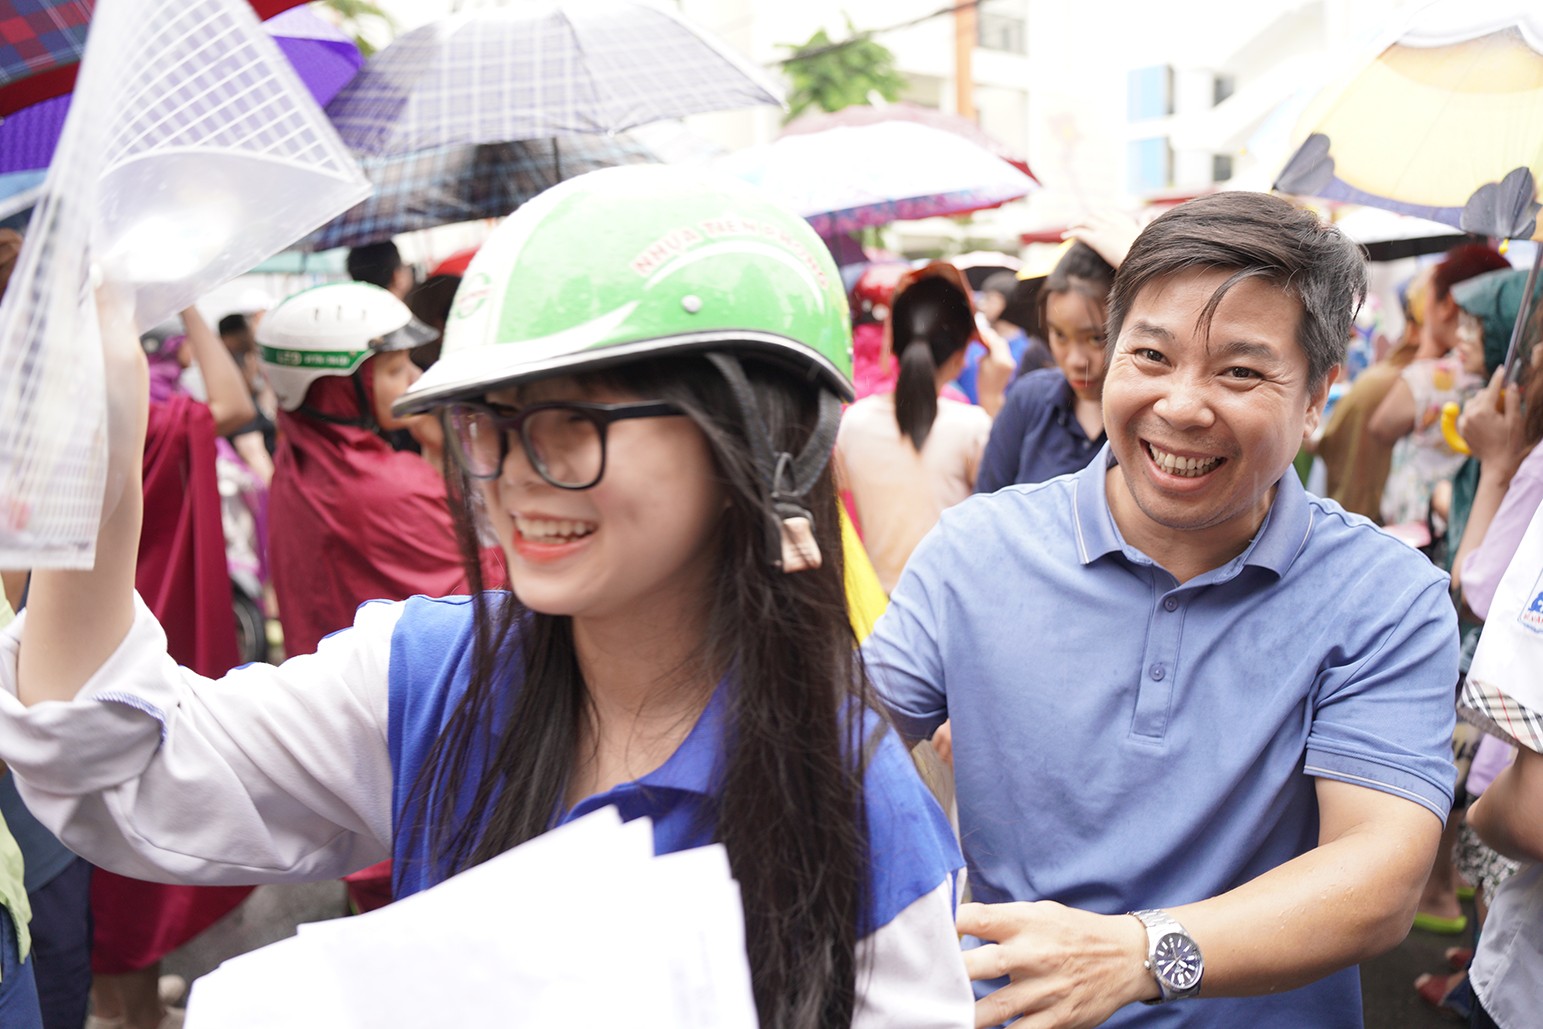 Ông Nguyễn Lê Thanh không giấu được sự vui mừng khi con gái thông báo làm tốt bài thi